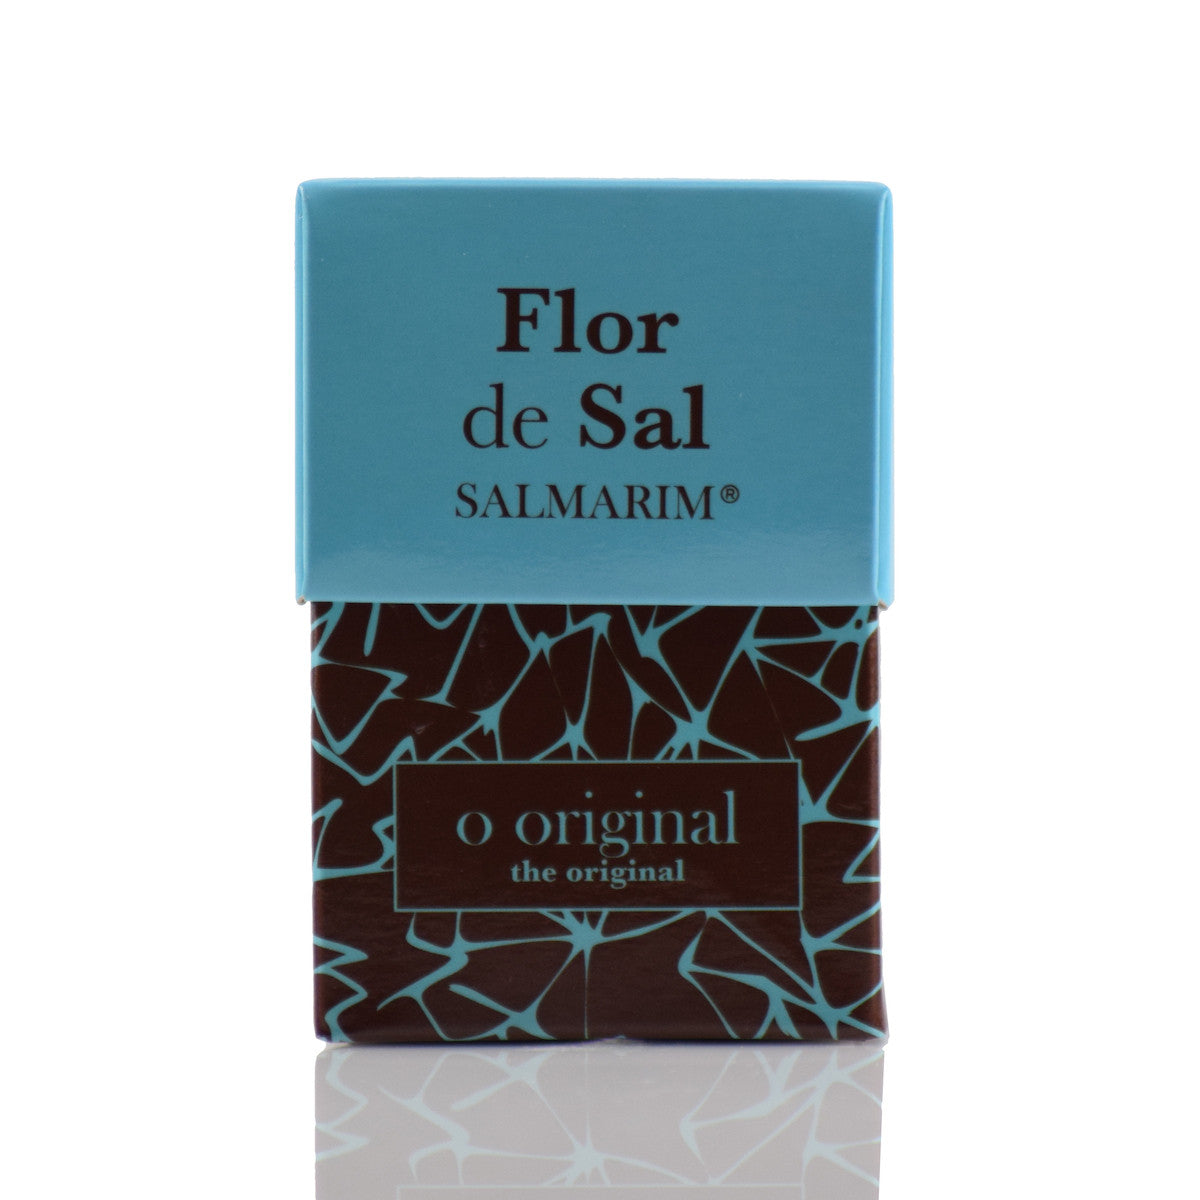 Flor de Sal Natural - Salmarim